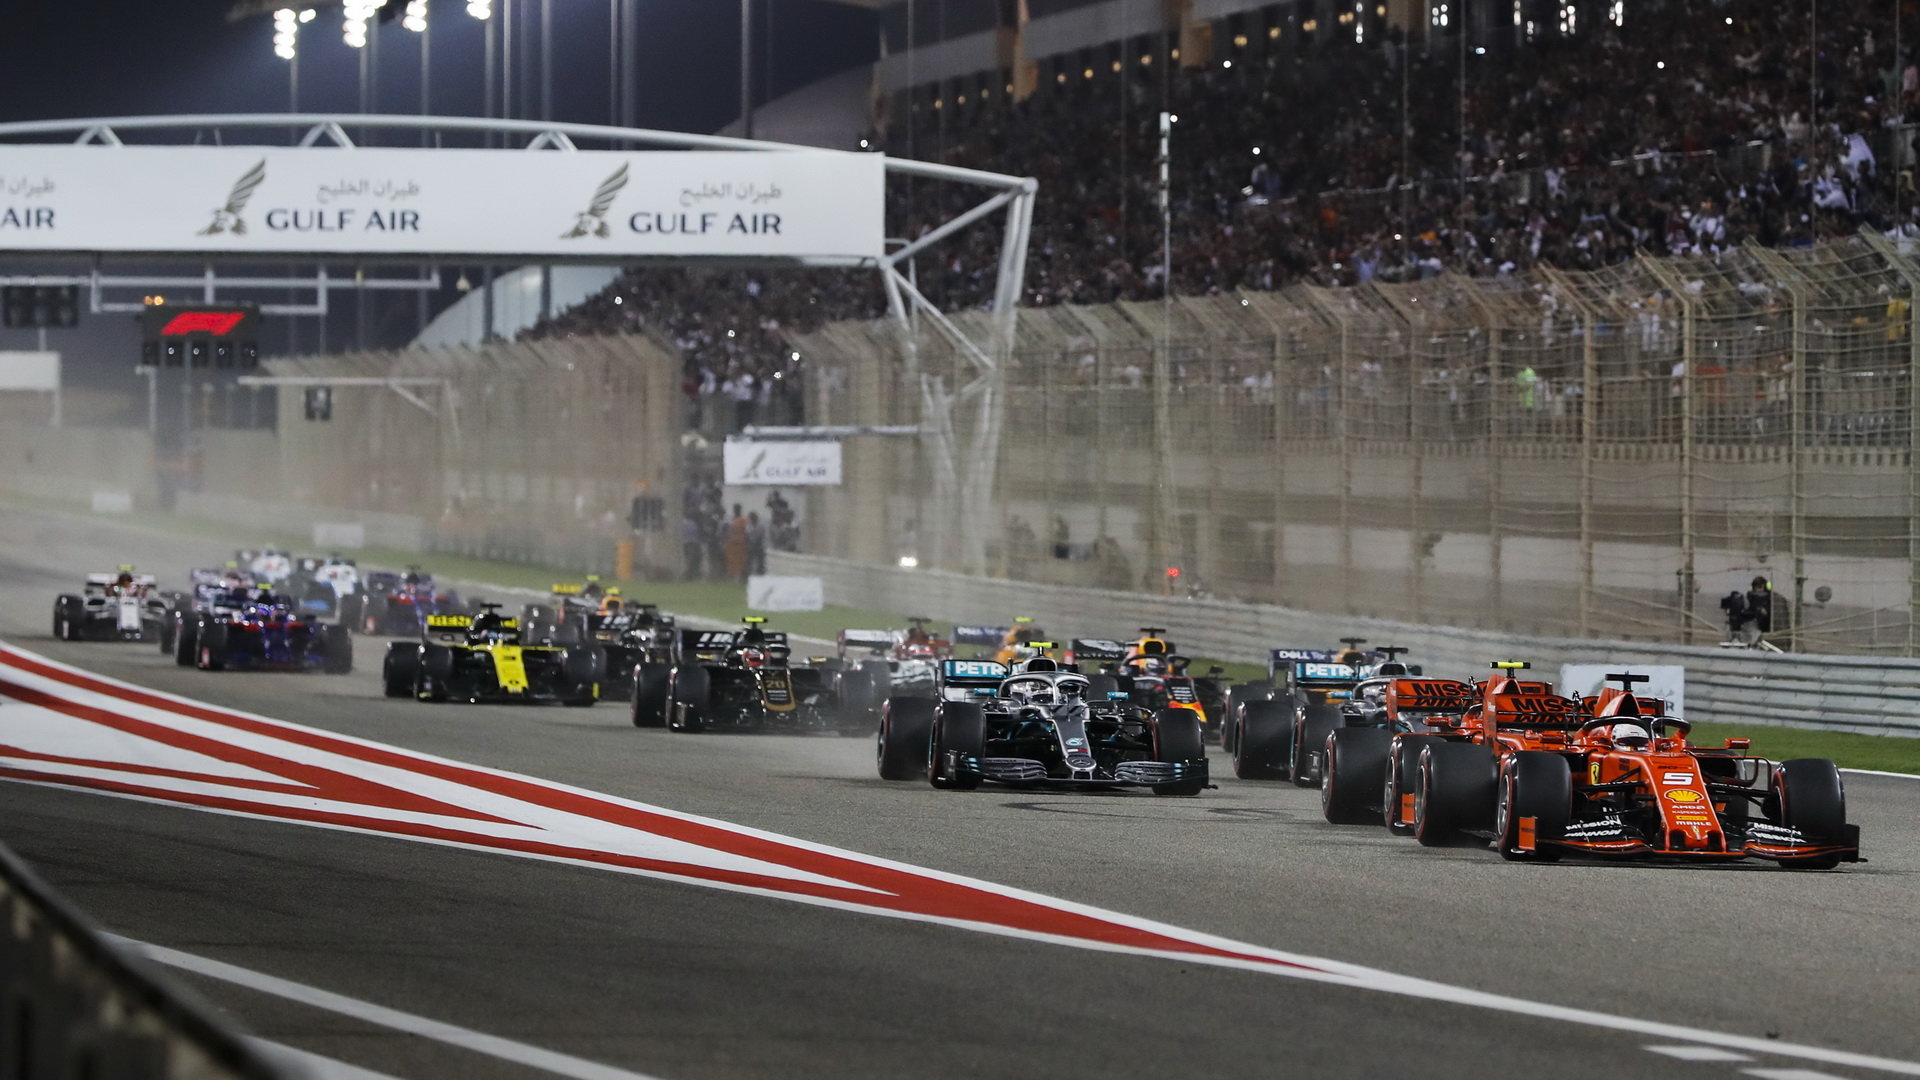 Hamilton sice v Bahrajnu vyhrál, ale k novým pravidlům je kritický - těsnou jízdu vozů za sebou vůbec neusnadnila